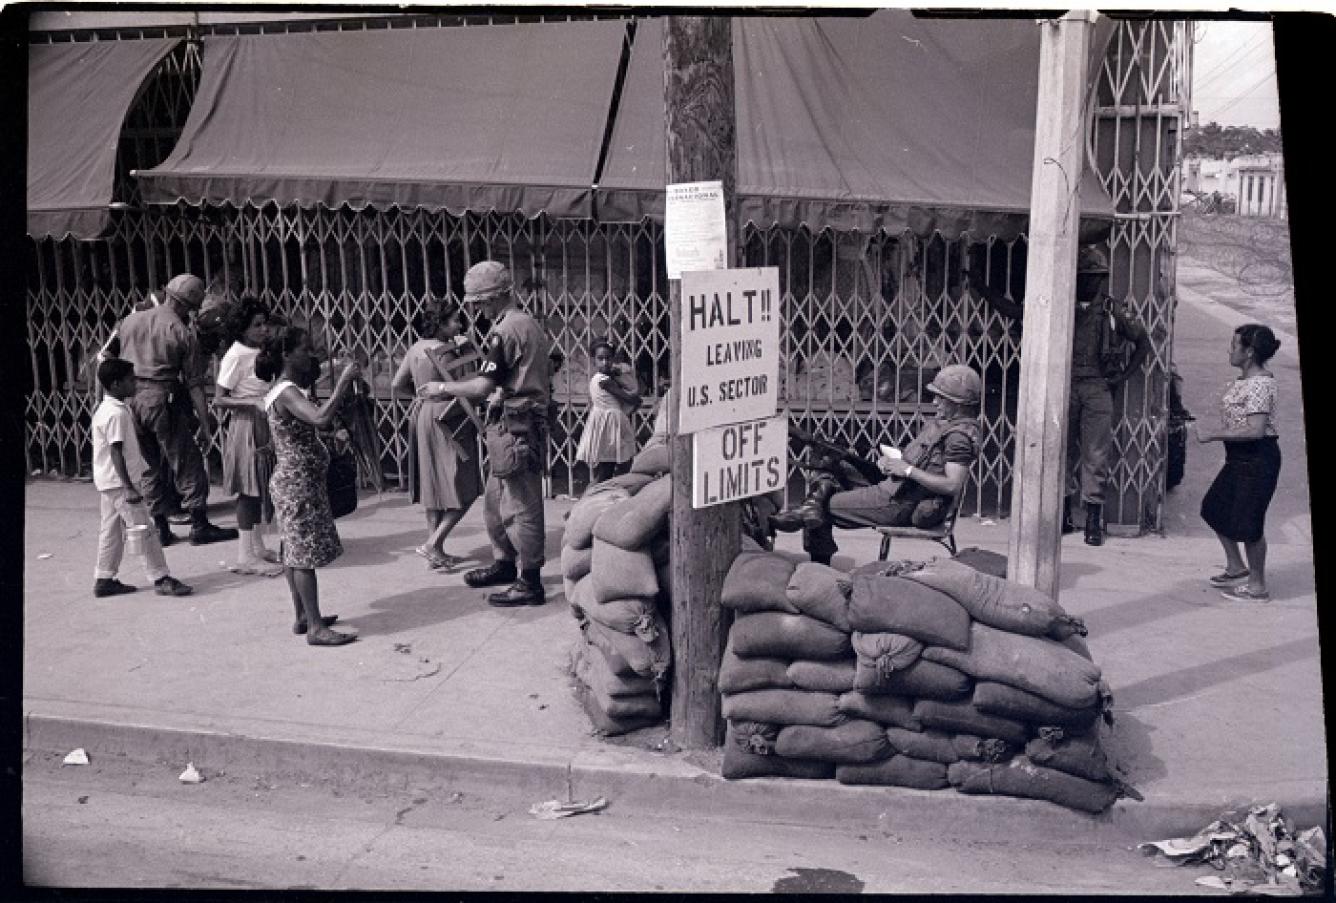 El trabajo del soldado estadounidense en equipo para controlar la entrada al sector estadounidense de Santo Domingo.